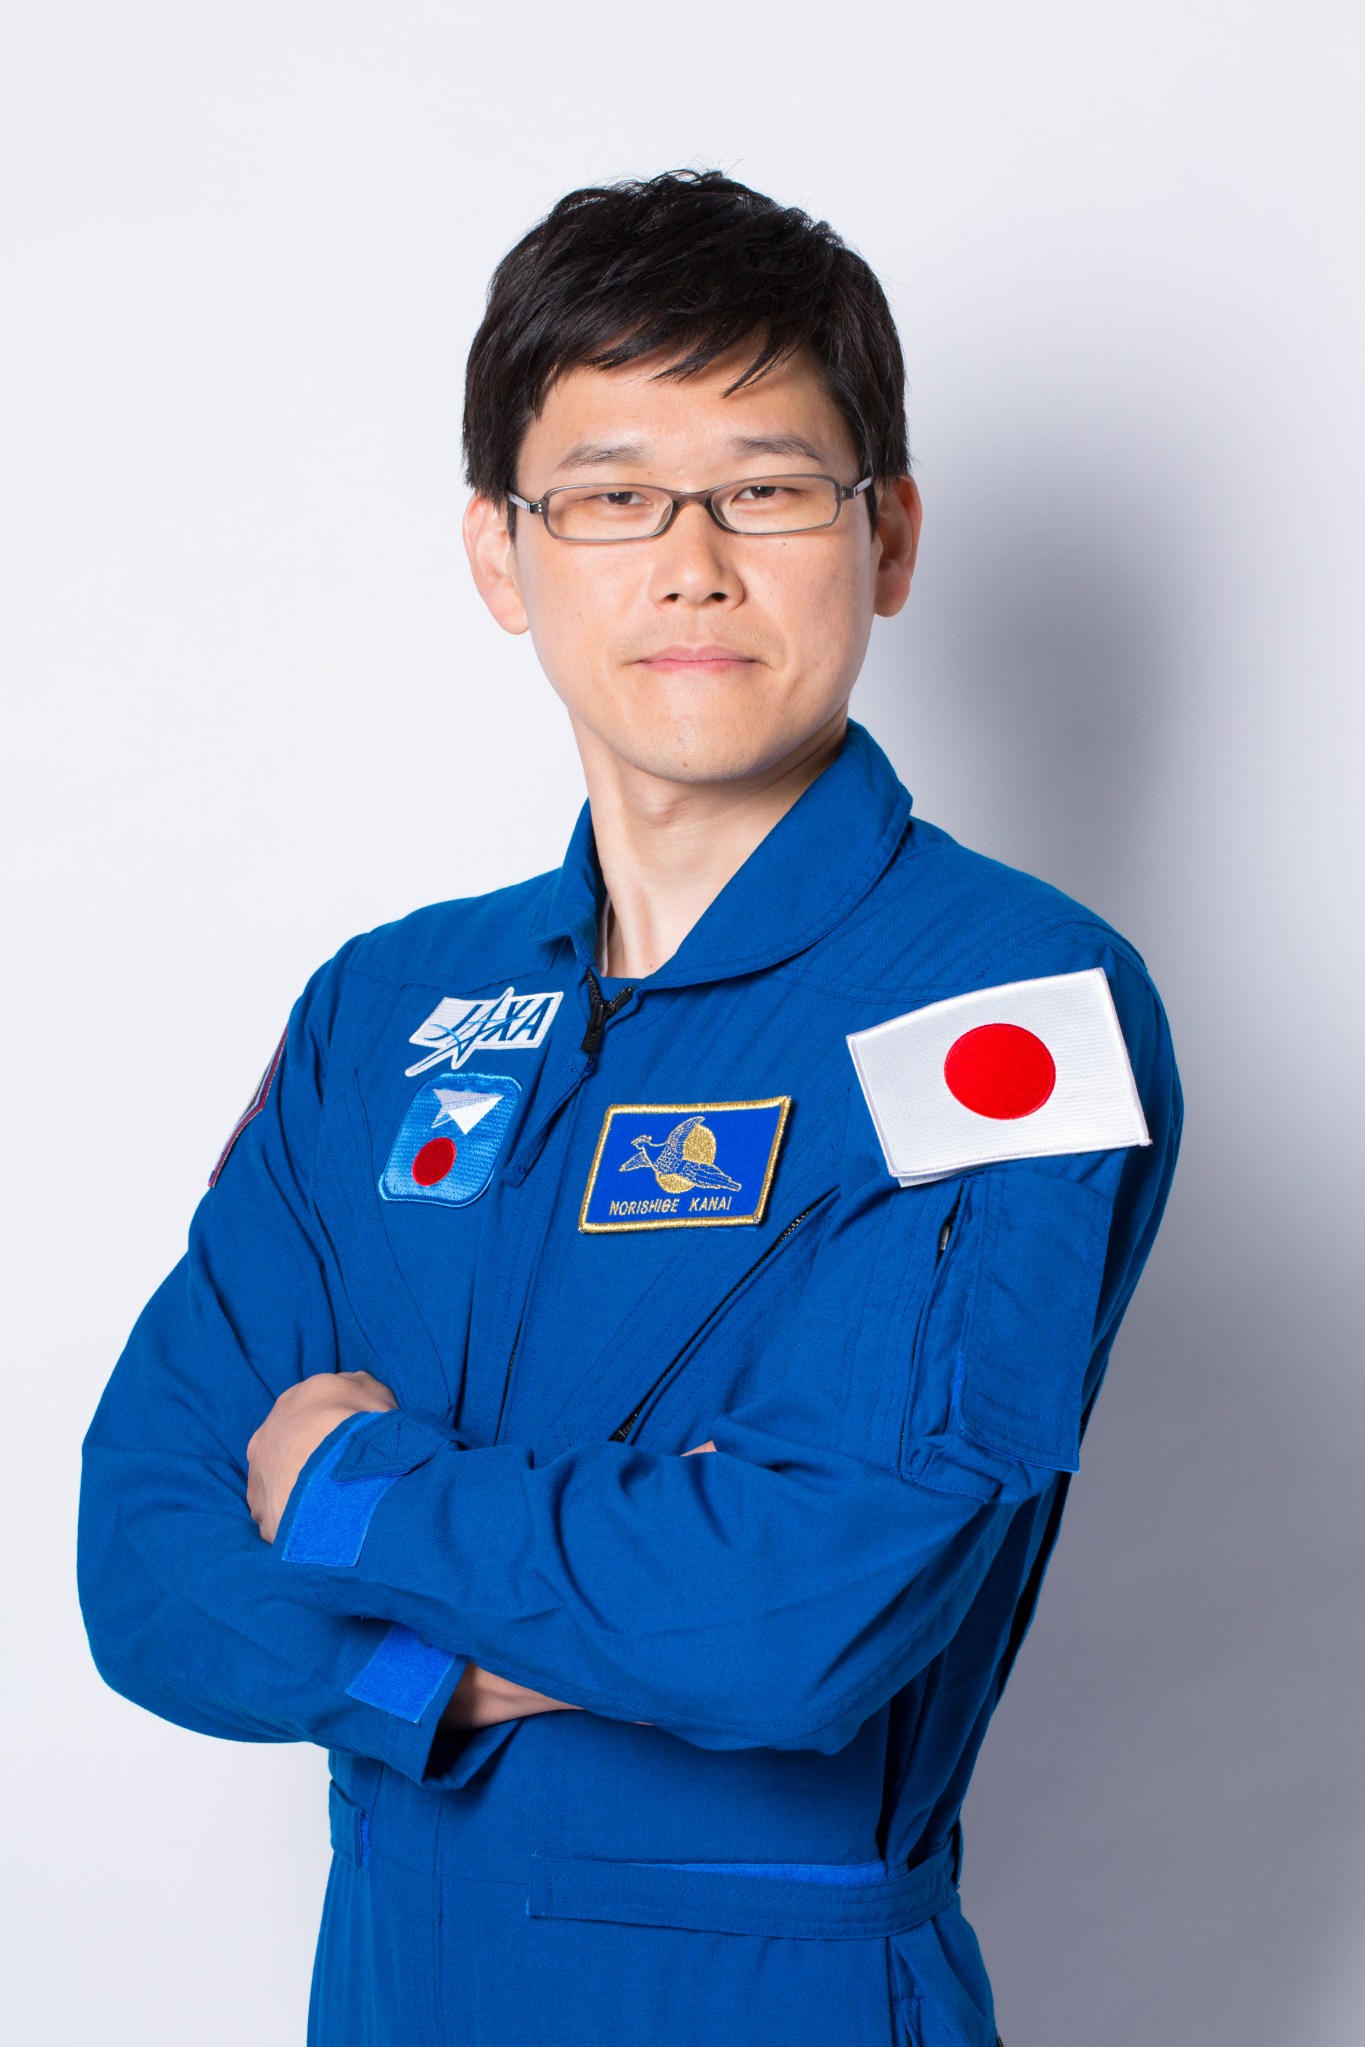 Norishige Kanai, JAXA astronaut. 